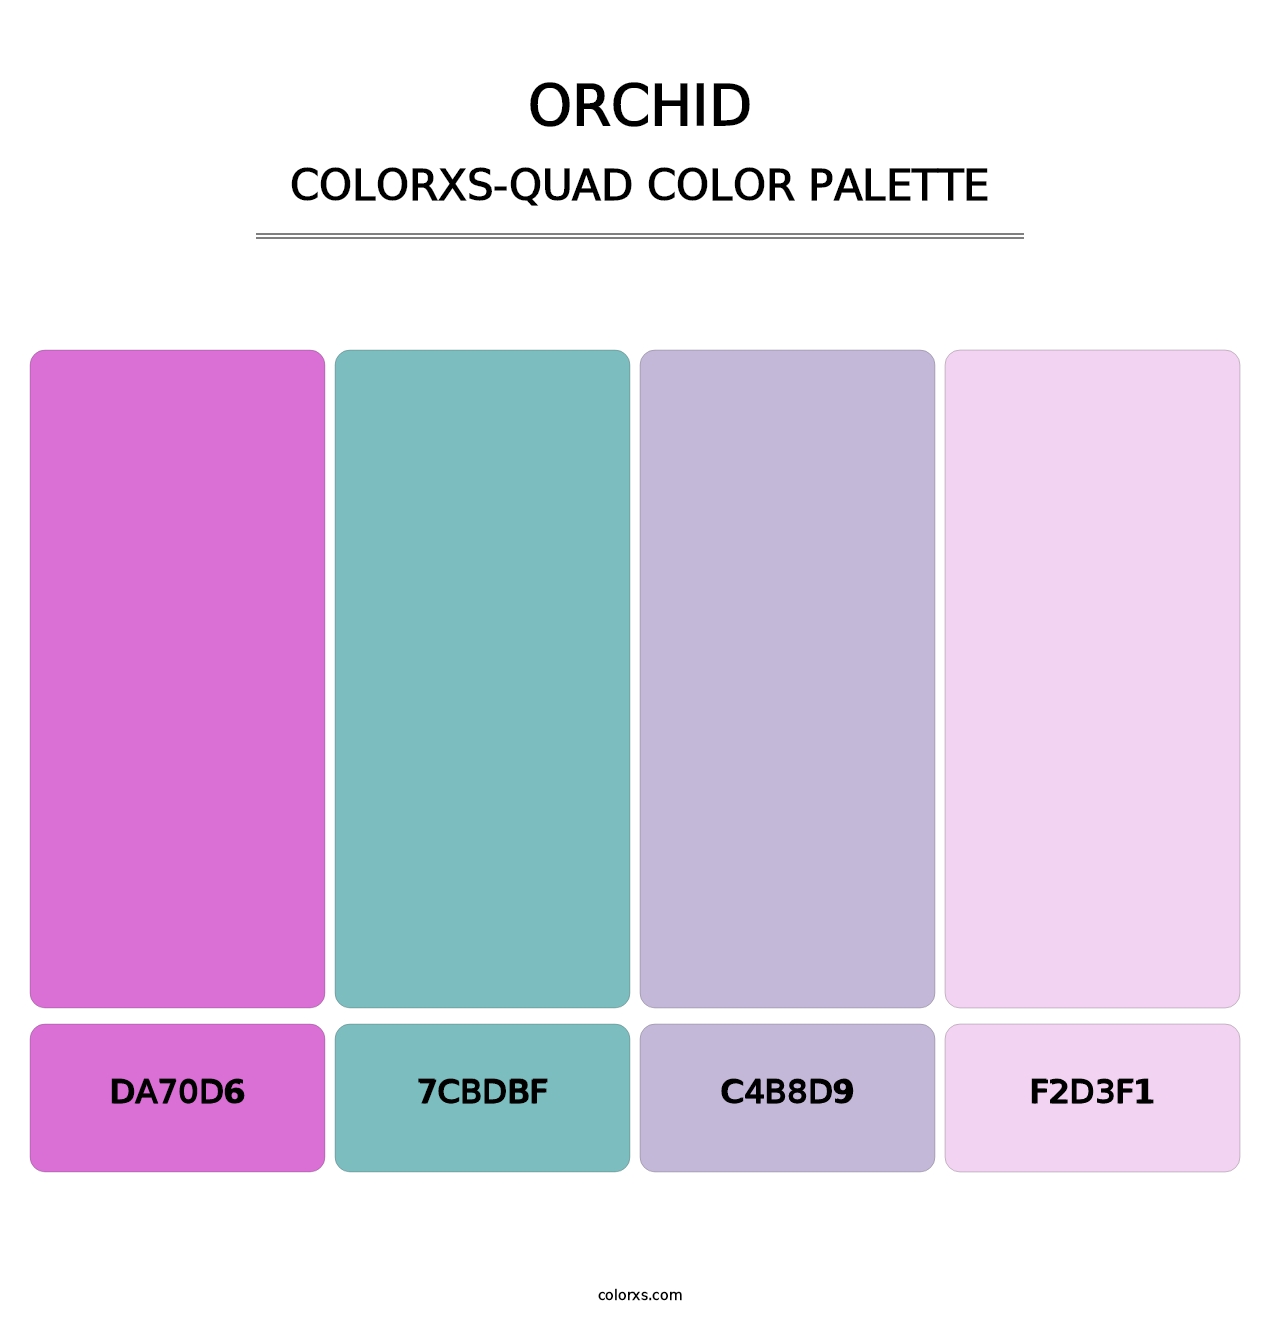 Orchid - Colorxs Quad Palette